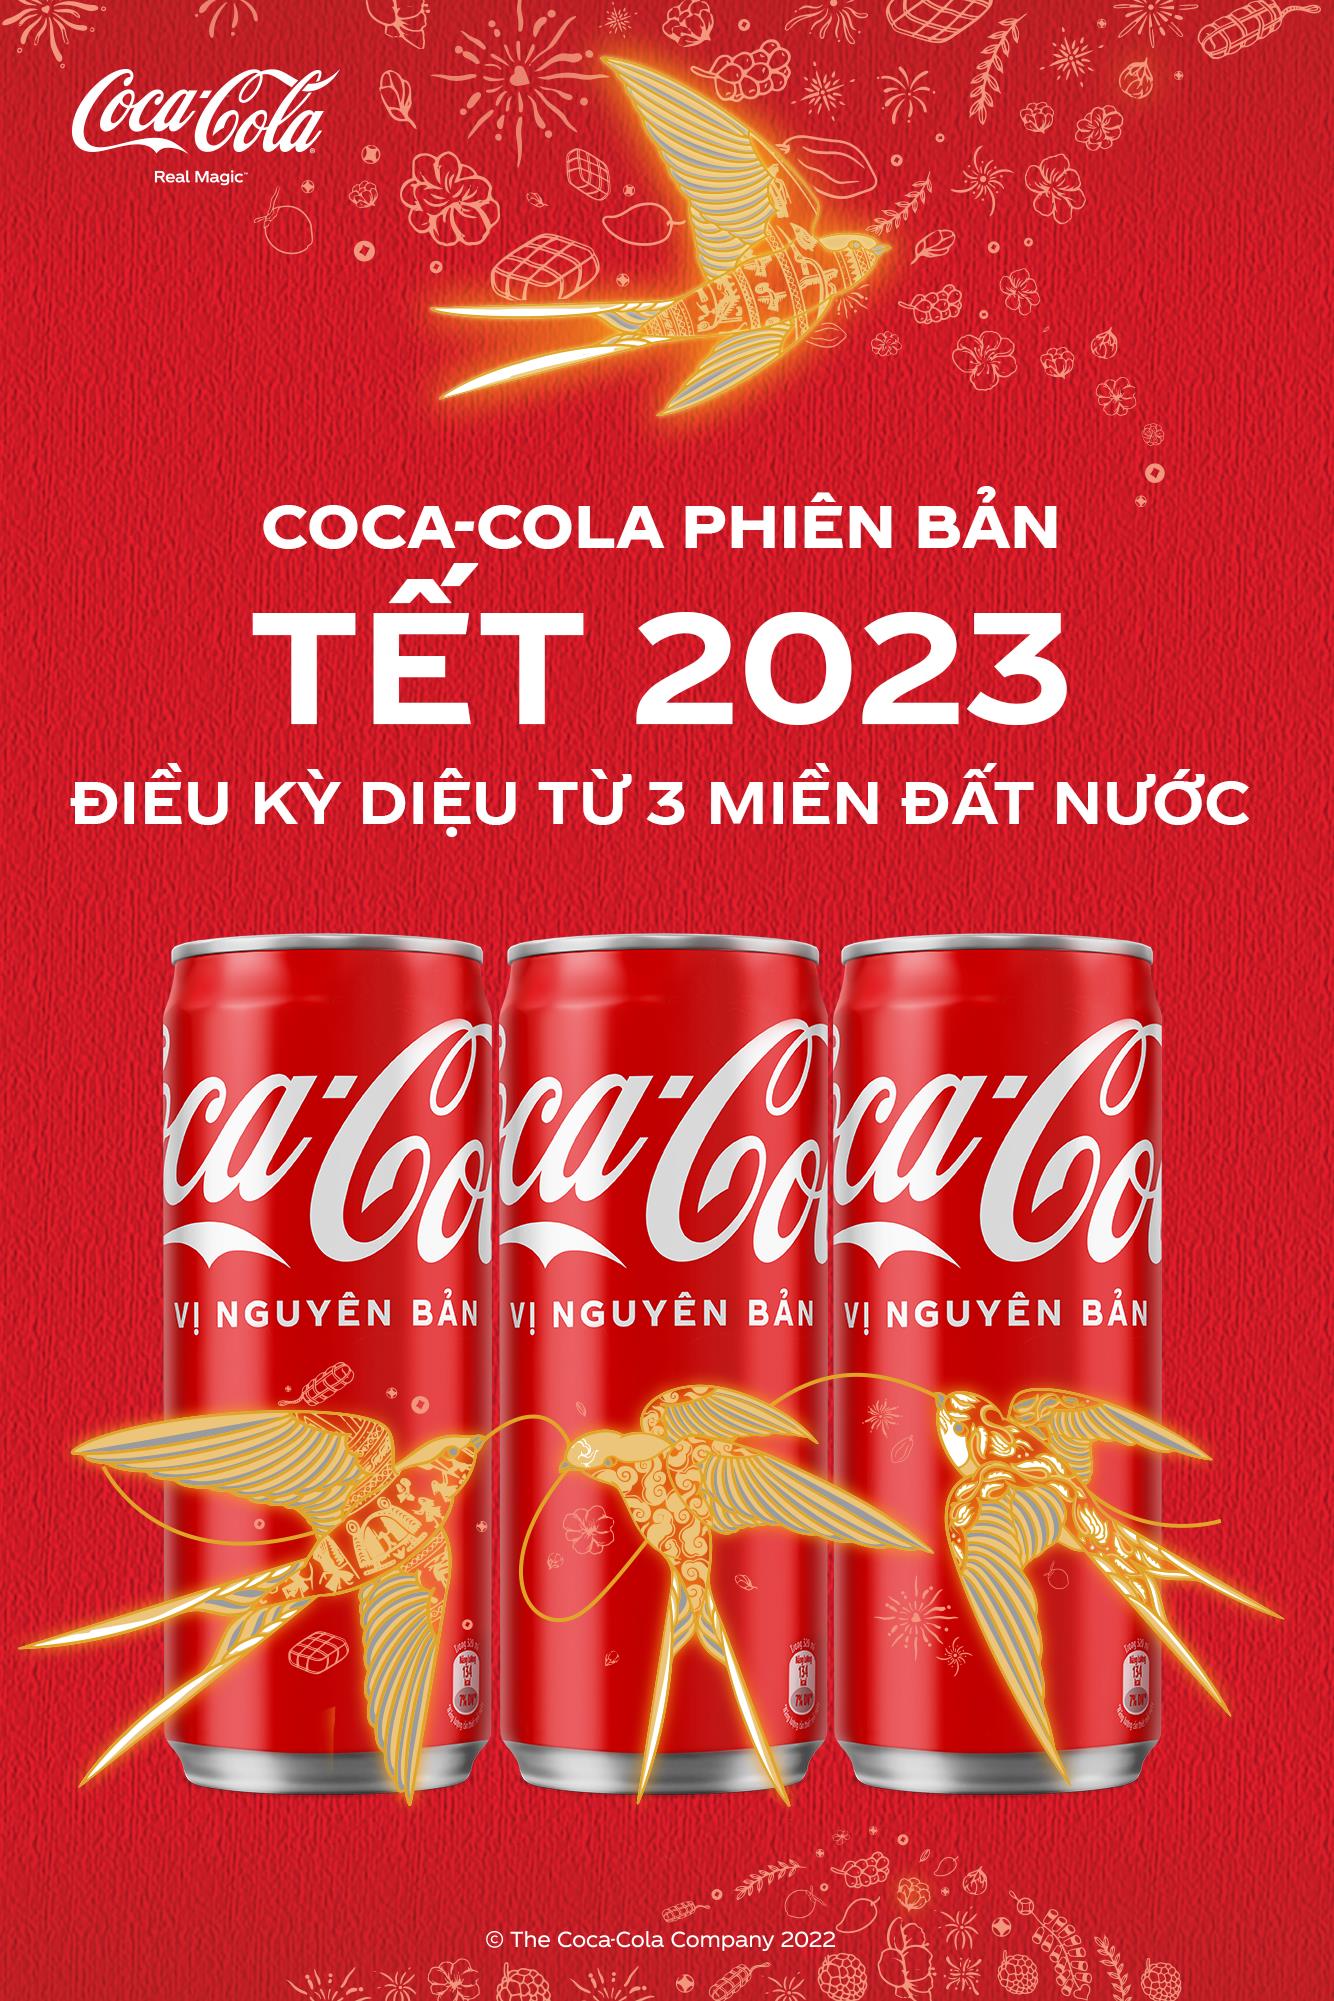 Coca-Cola Việt Nam xác lập kỷ lục thế giới trong chiến dịch Tết 2023, tôn vinh khoảnh khắc diệu kỳ gắn kết gia đình - ảnh 7